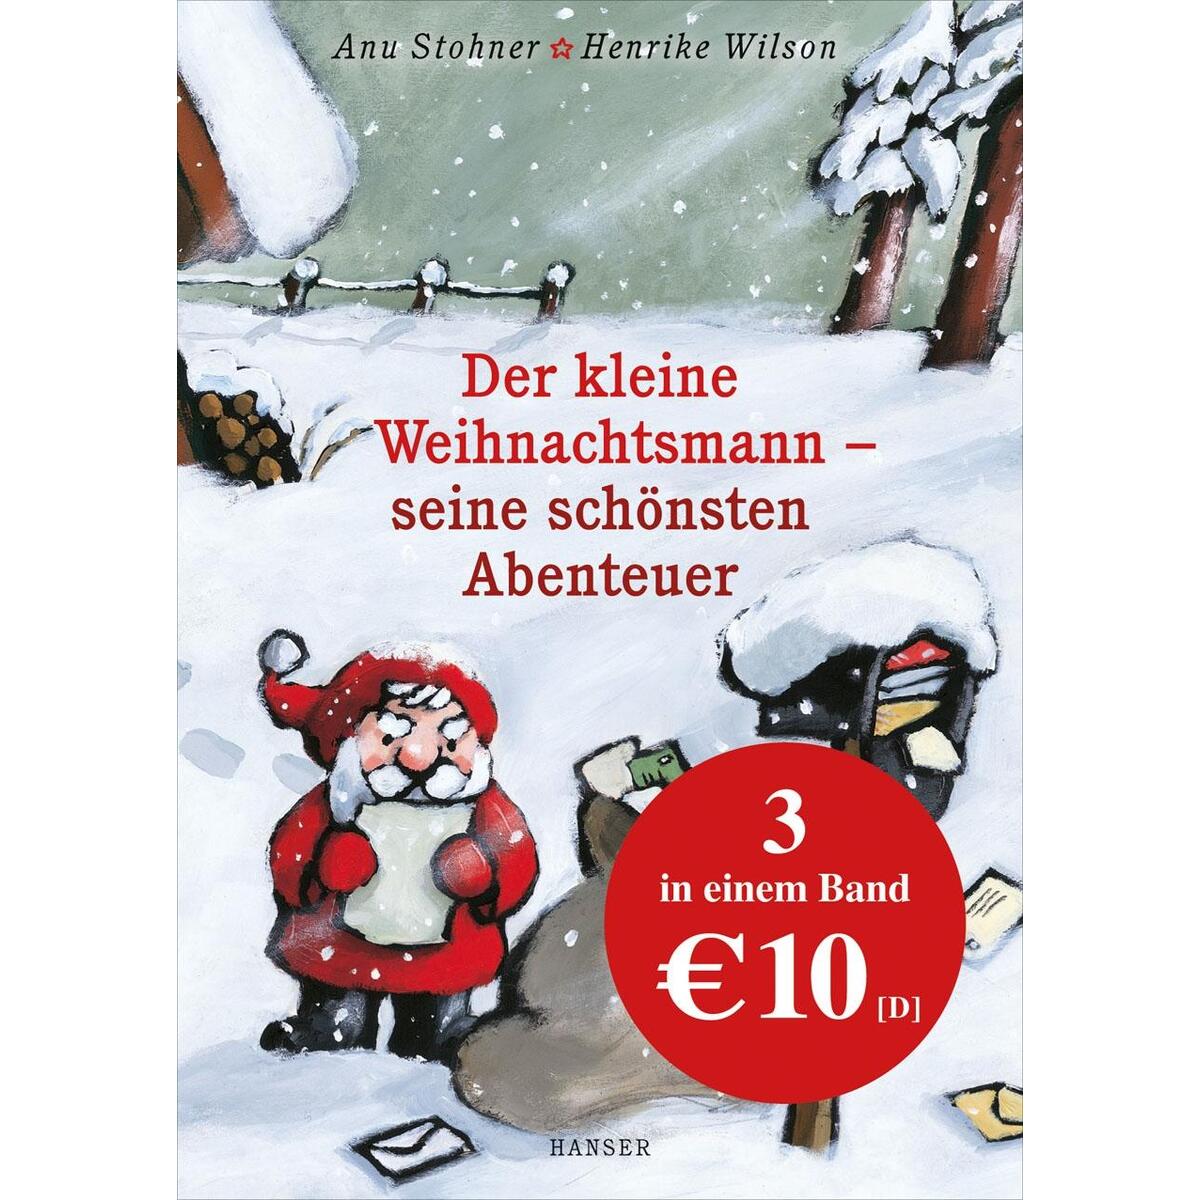 Der kleine Weihnachtsmann - seine schönsten Abenteuer von Carl Hanser Verlag